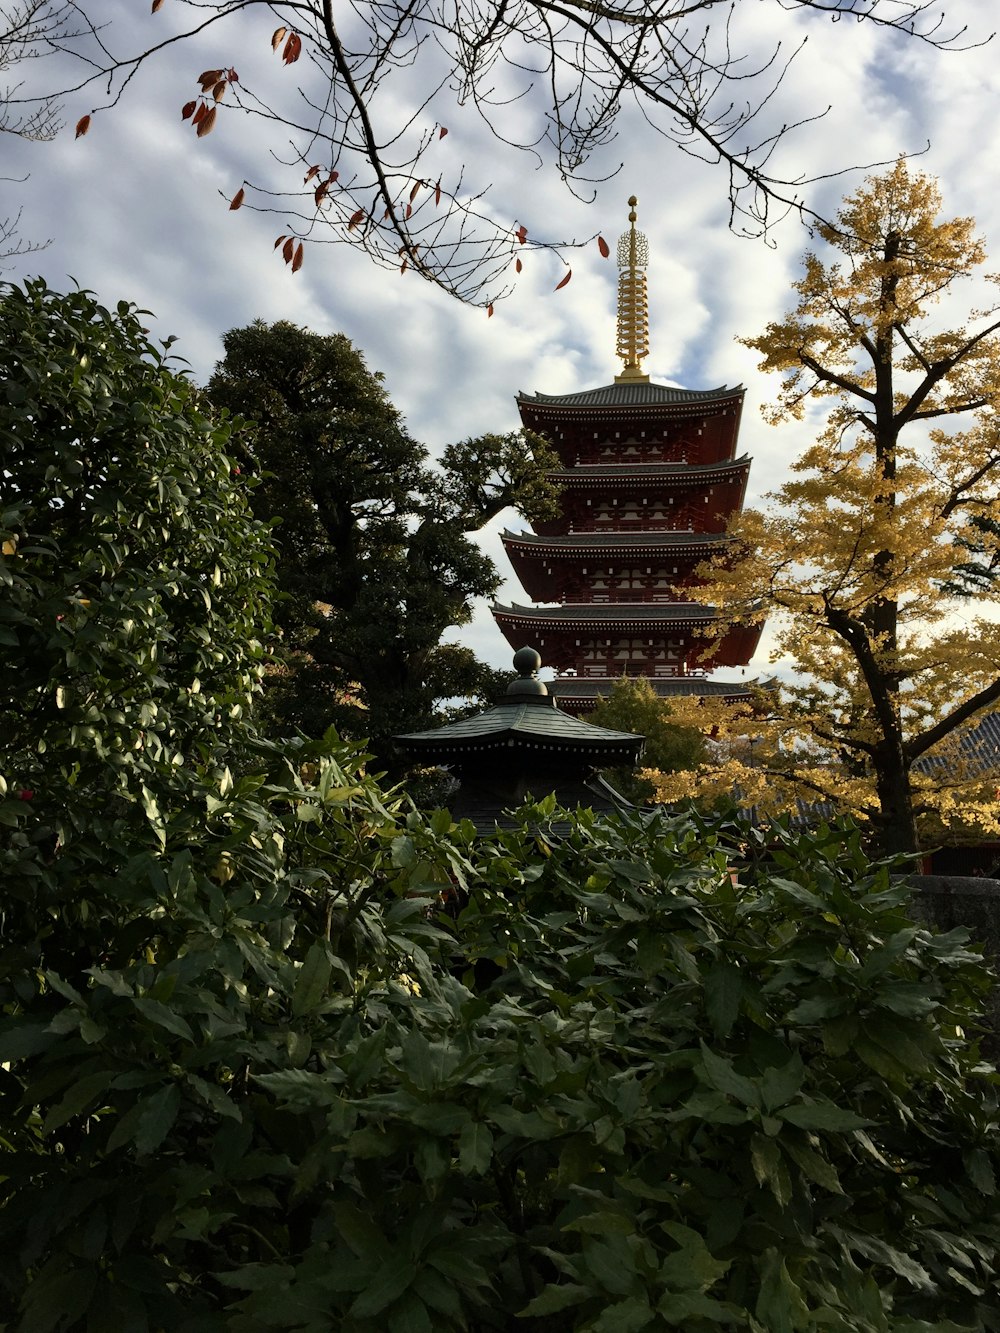 日中の茶色と白の寺院の近くの緑の木々